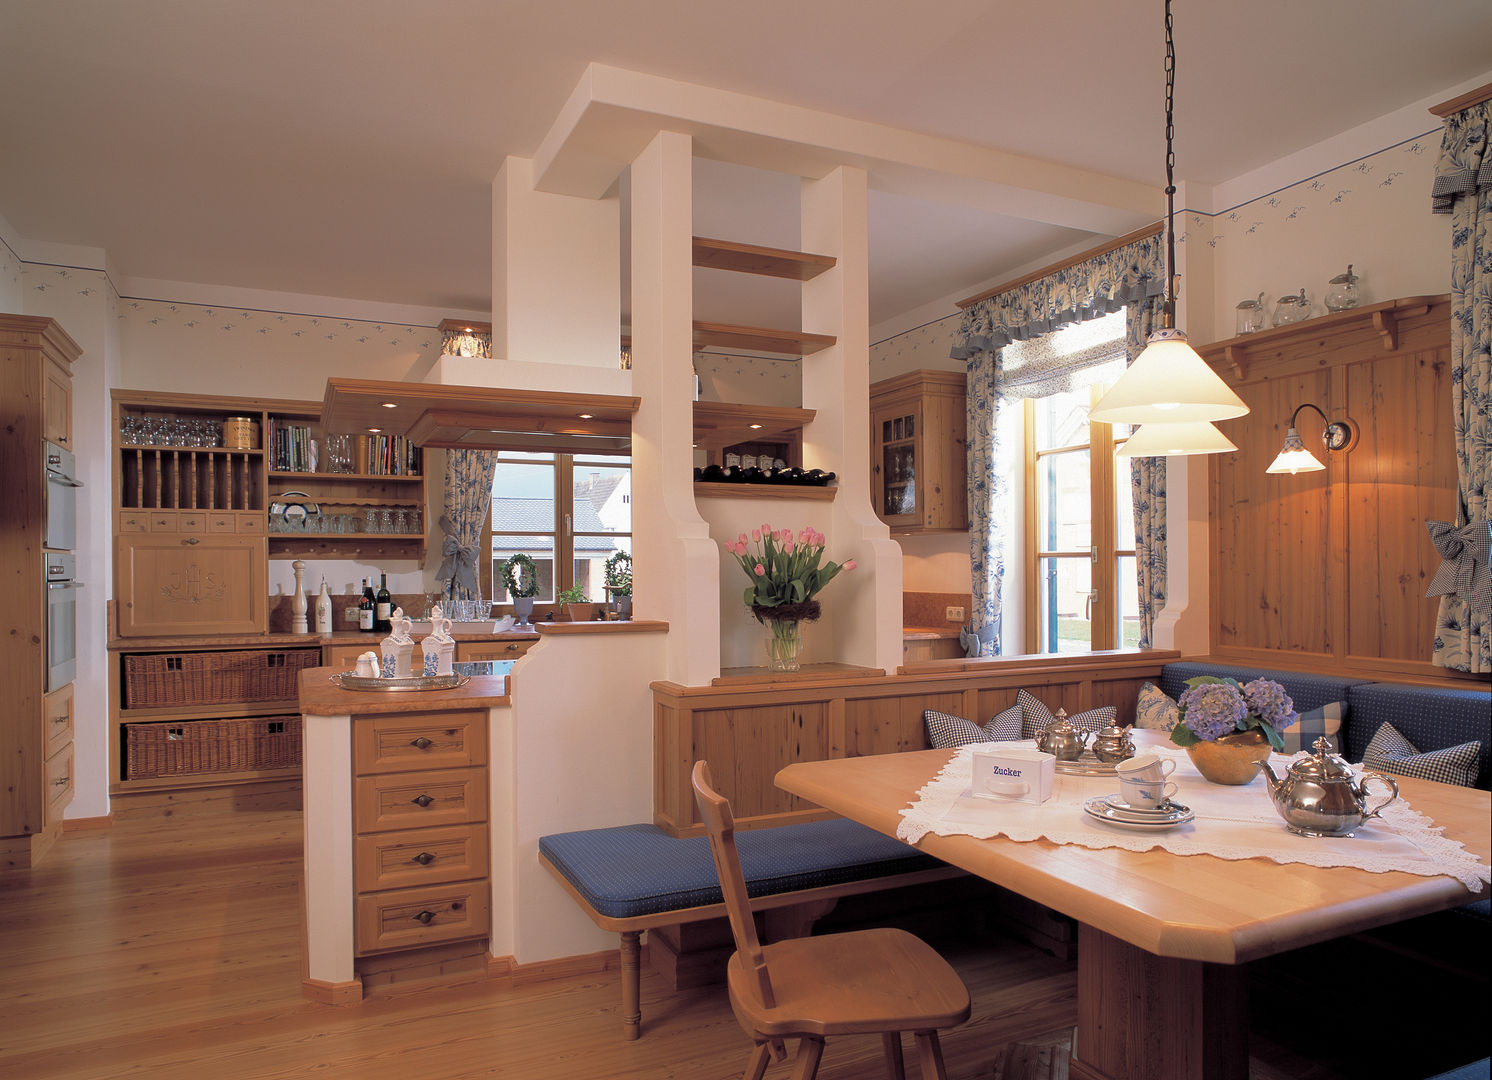 Traditionelle Landhausvilla, Bau-Fritz GmbH & Co. KG Bau-Fritz GmbH & Co. KG Country style kitchen Tables & chairs